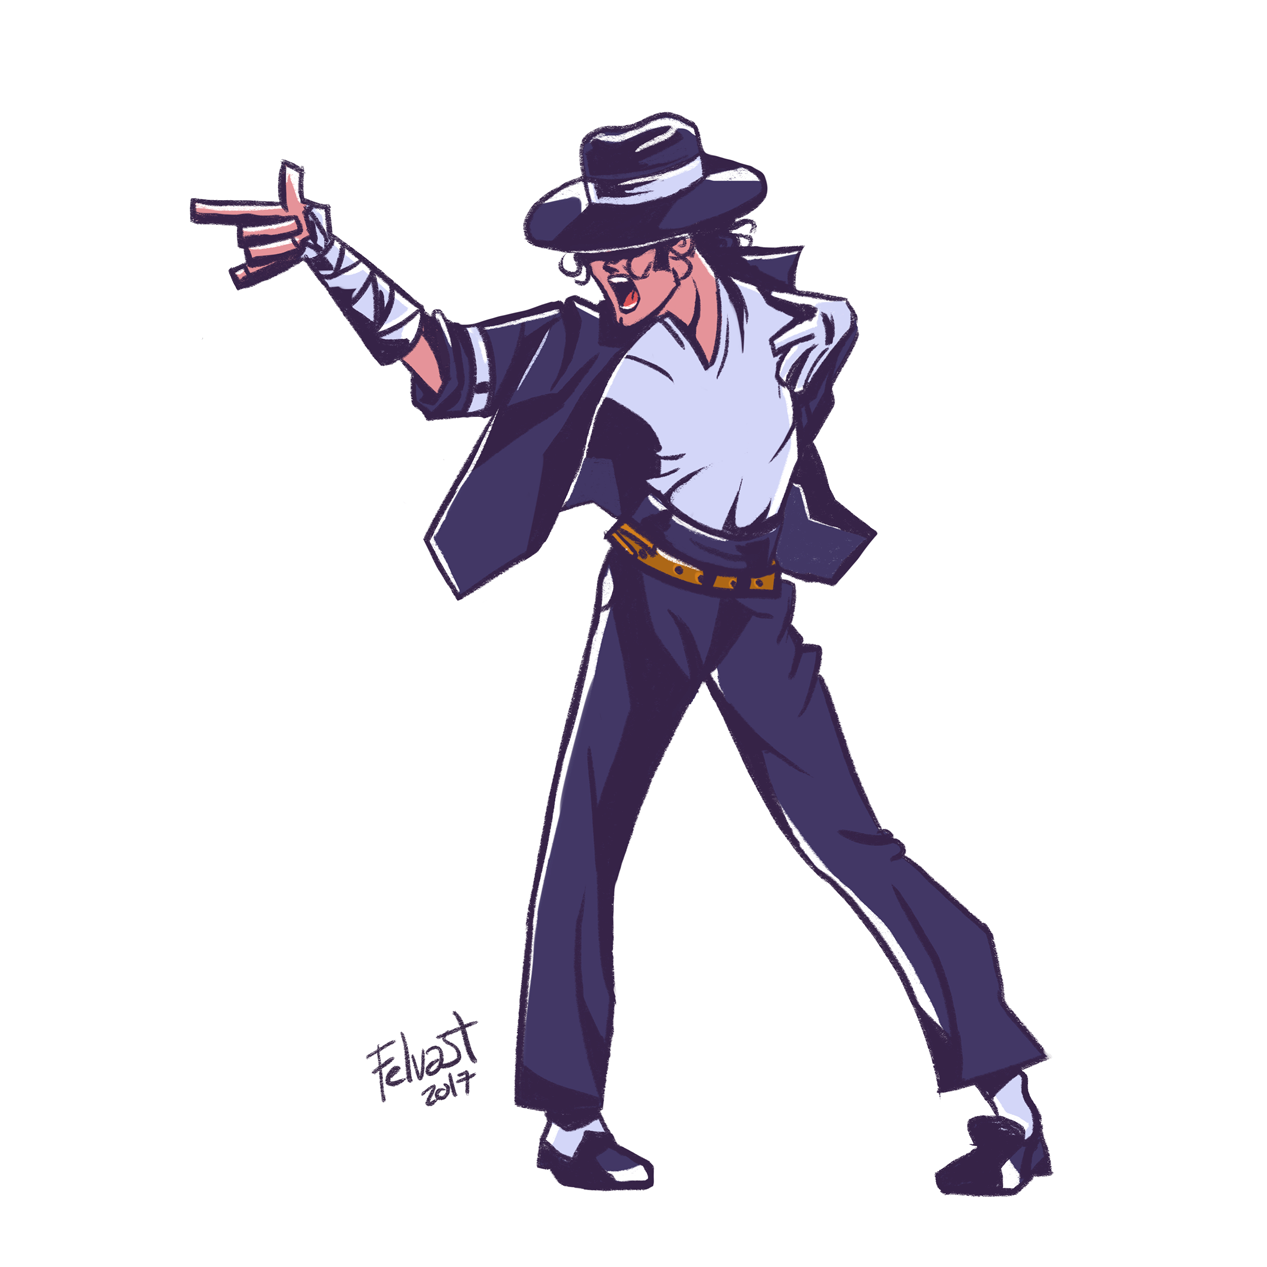 Michael Jackson Cartoon, Felvast, Digital, 2017